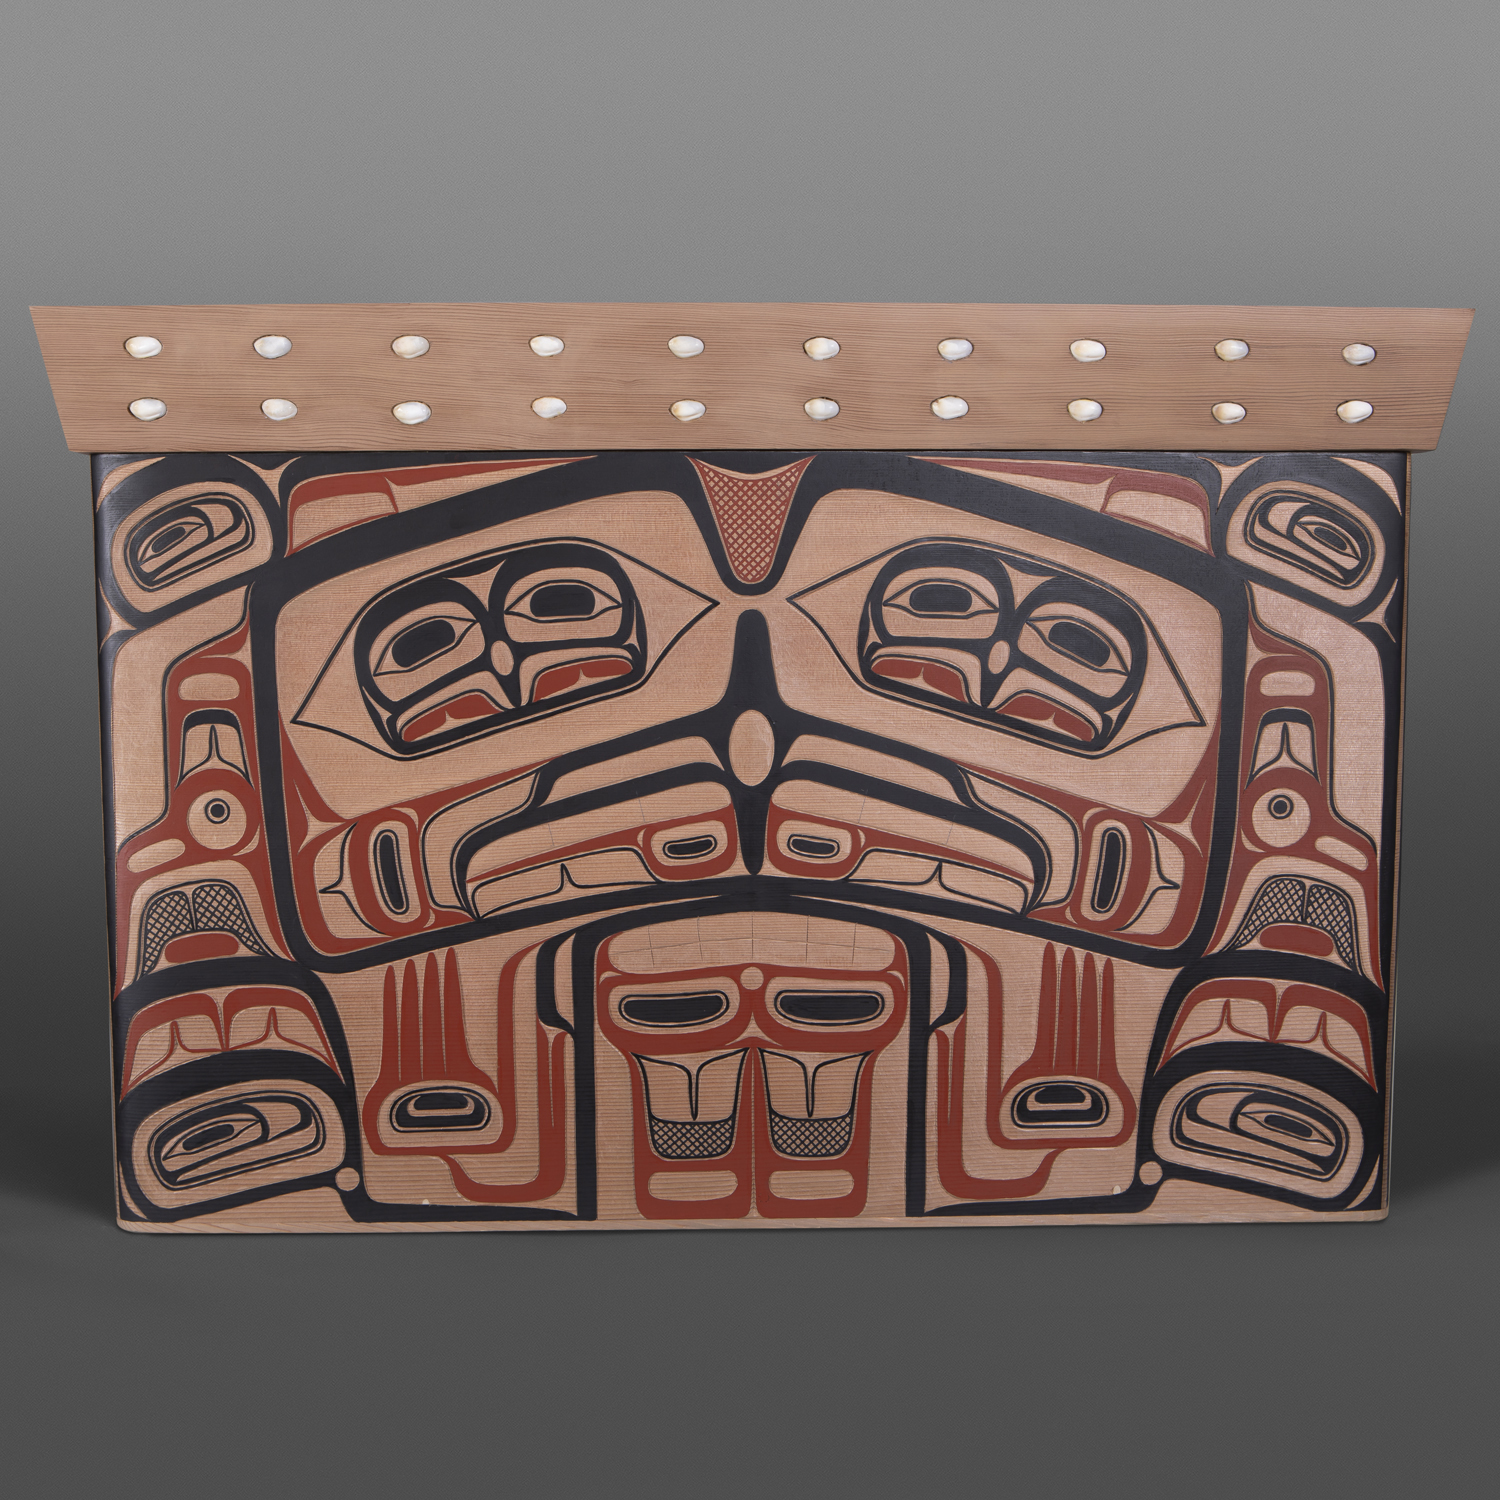 Eagle Chief's Treasure Box
David Boxley
Tsimshian
Red cedar, paint
23" x 18½" x 34½"
$20,000
